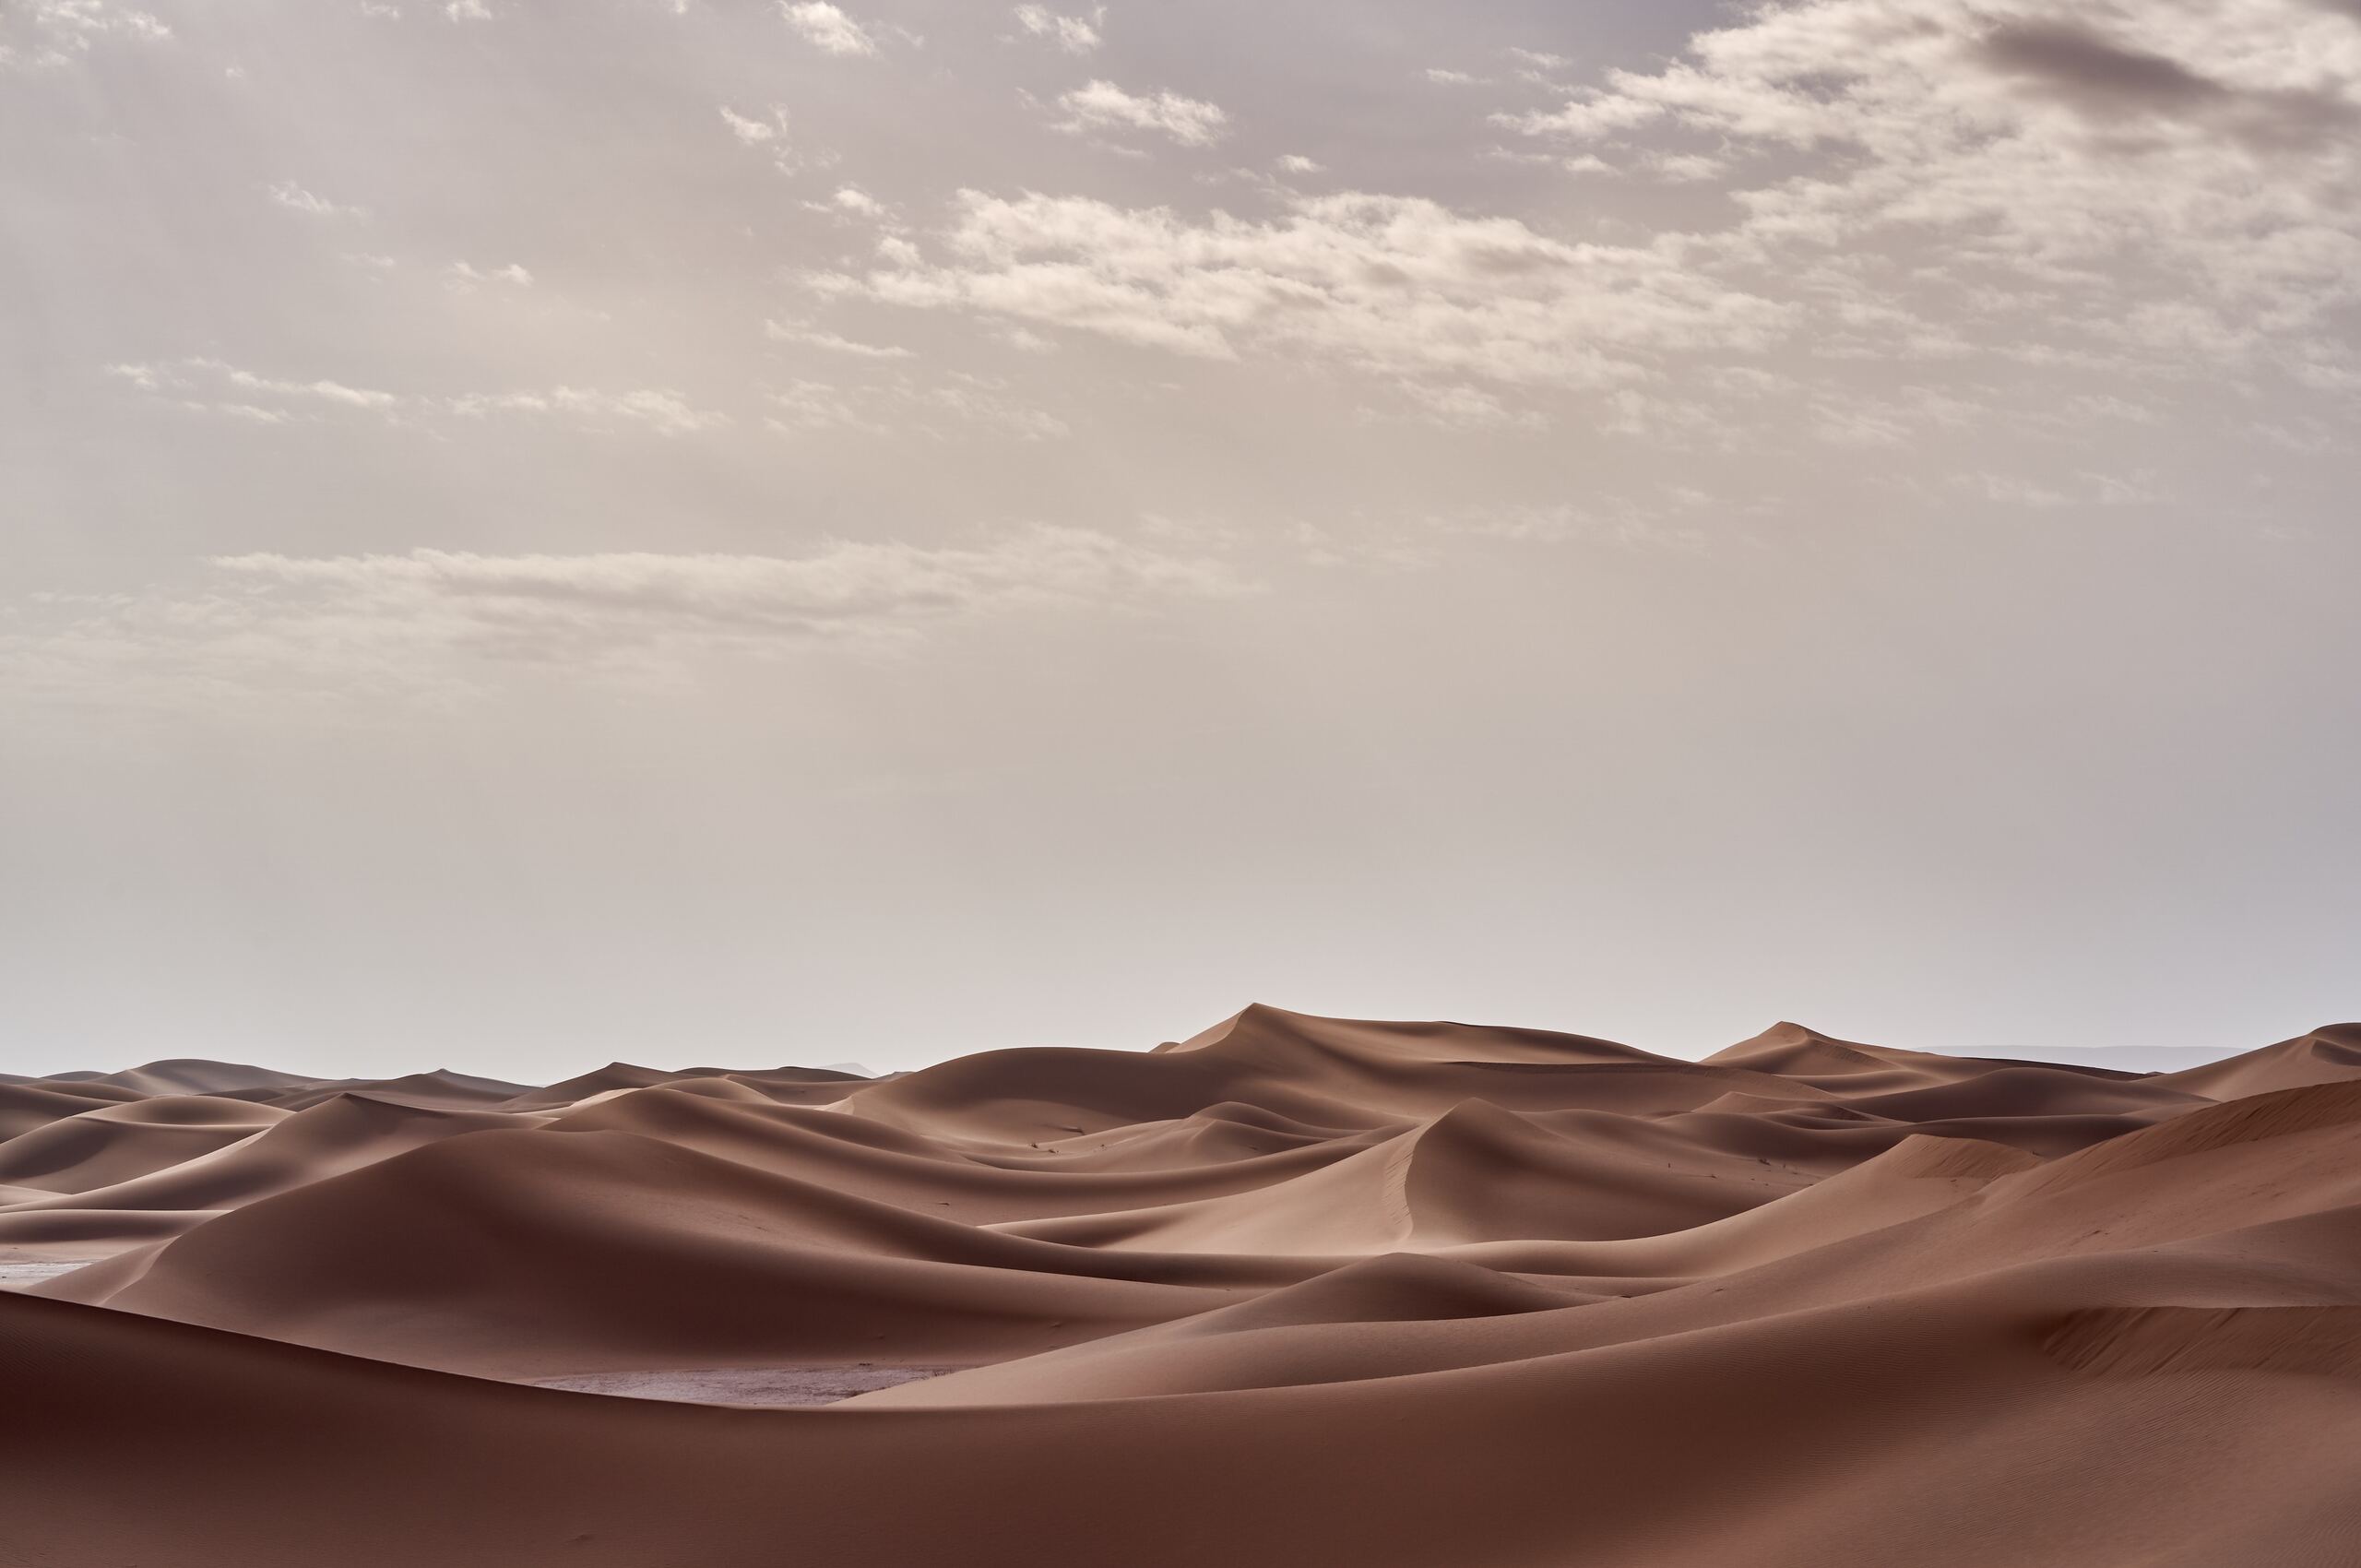 A landscape photo of sand dunes in the desert. - Desert